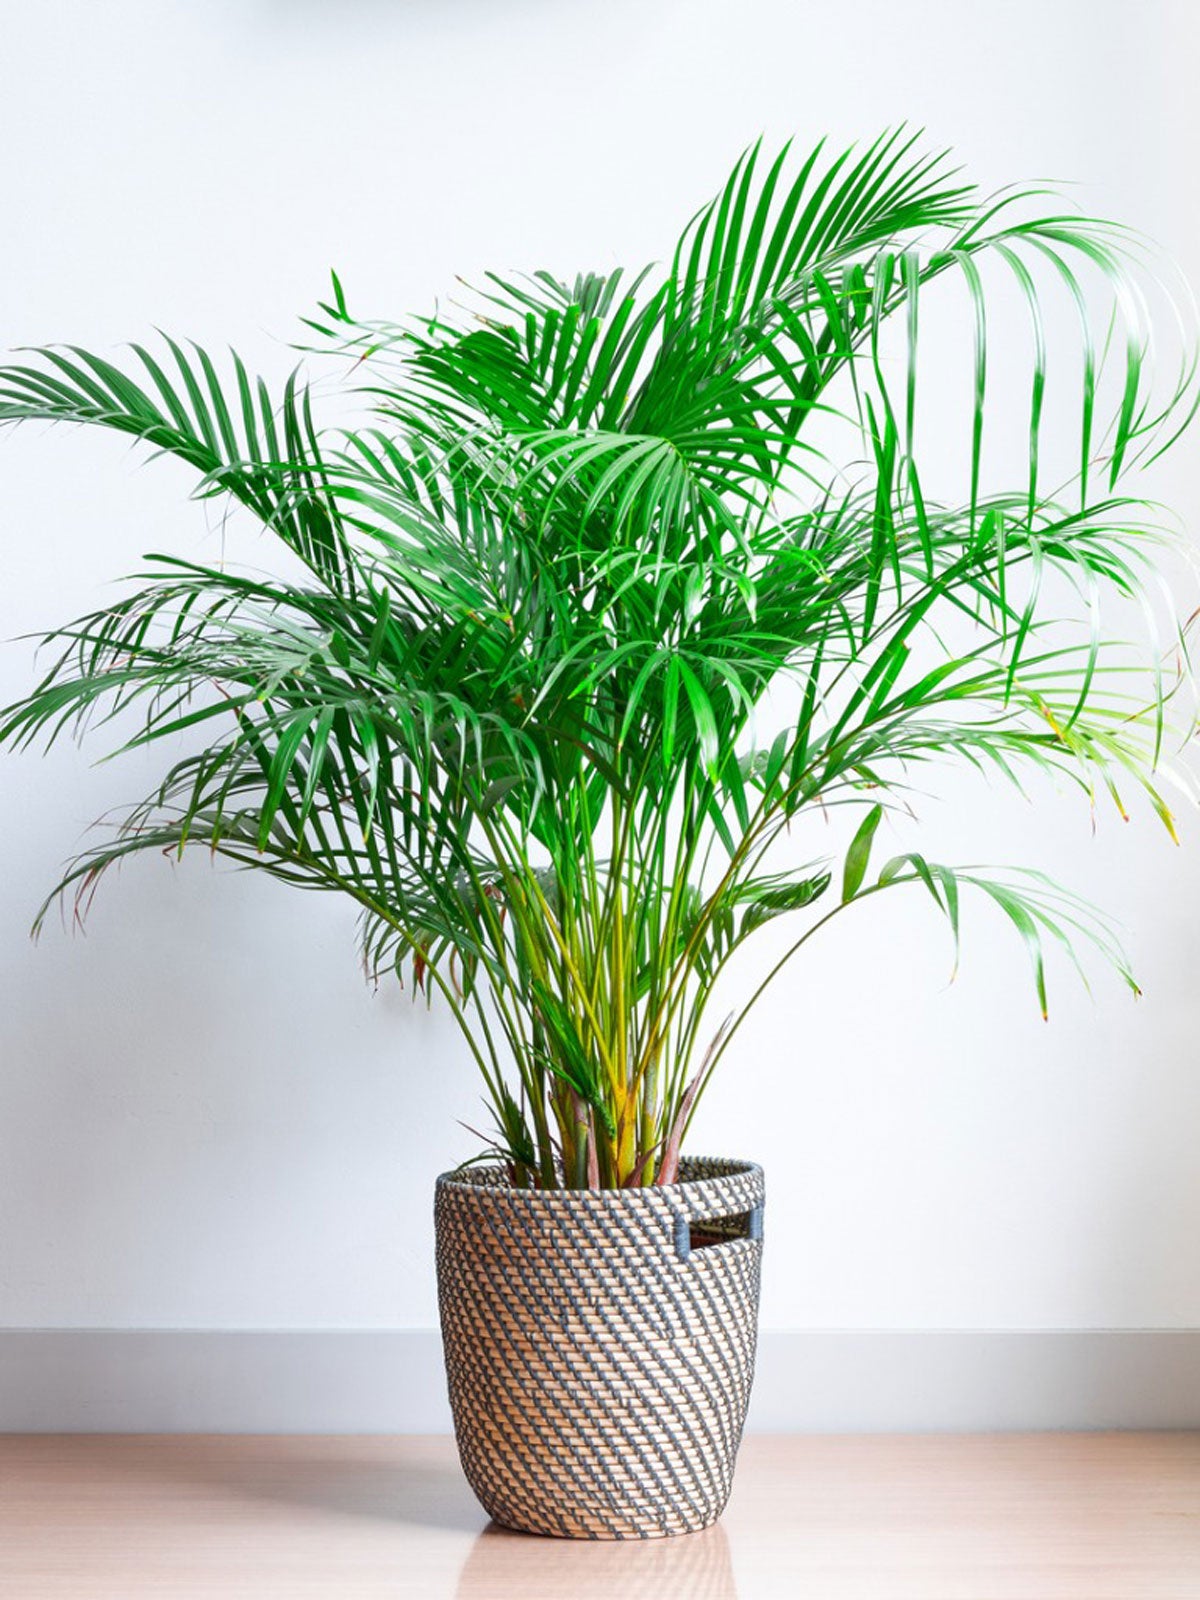 Areca Palm Plants How To Grow Areca Palm Houseplant Gardening Know How